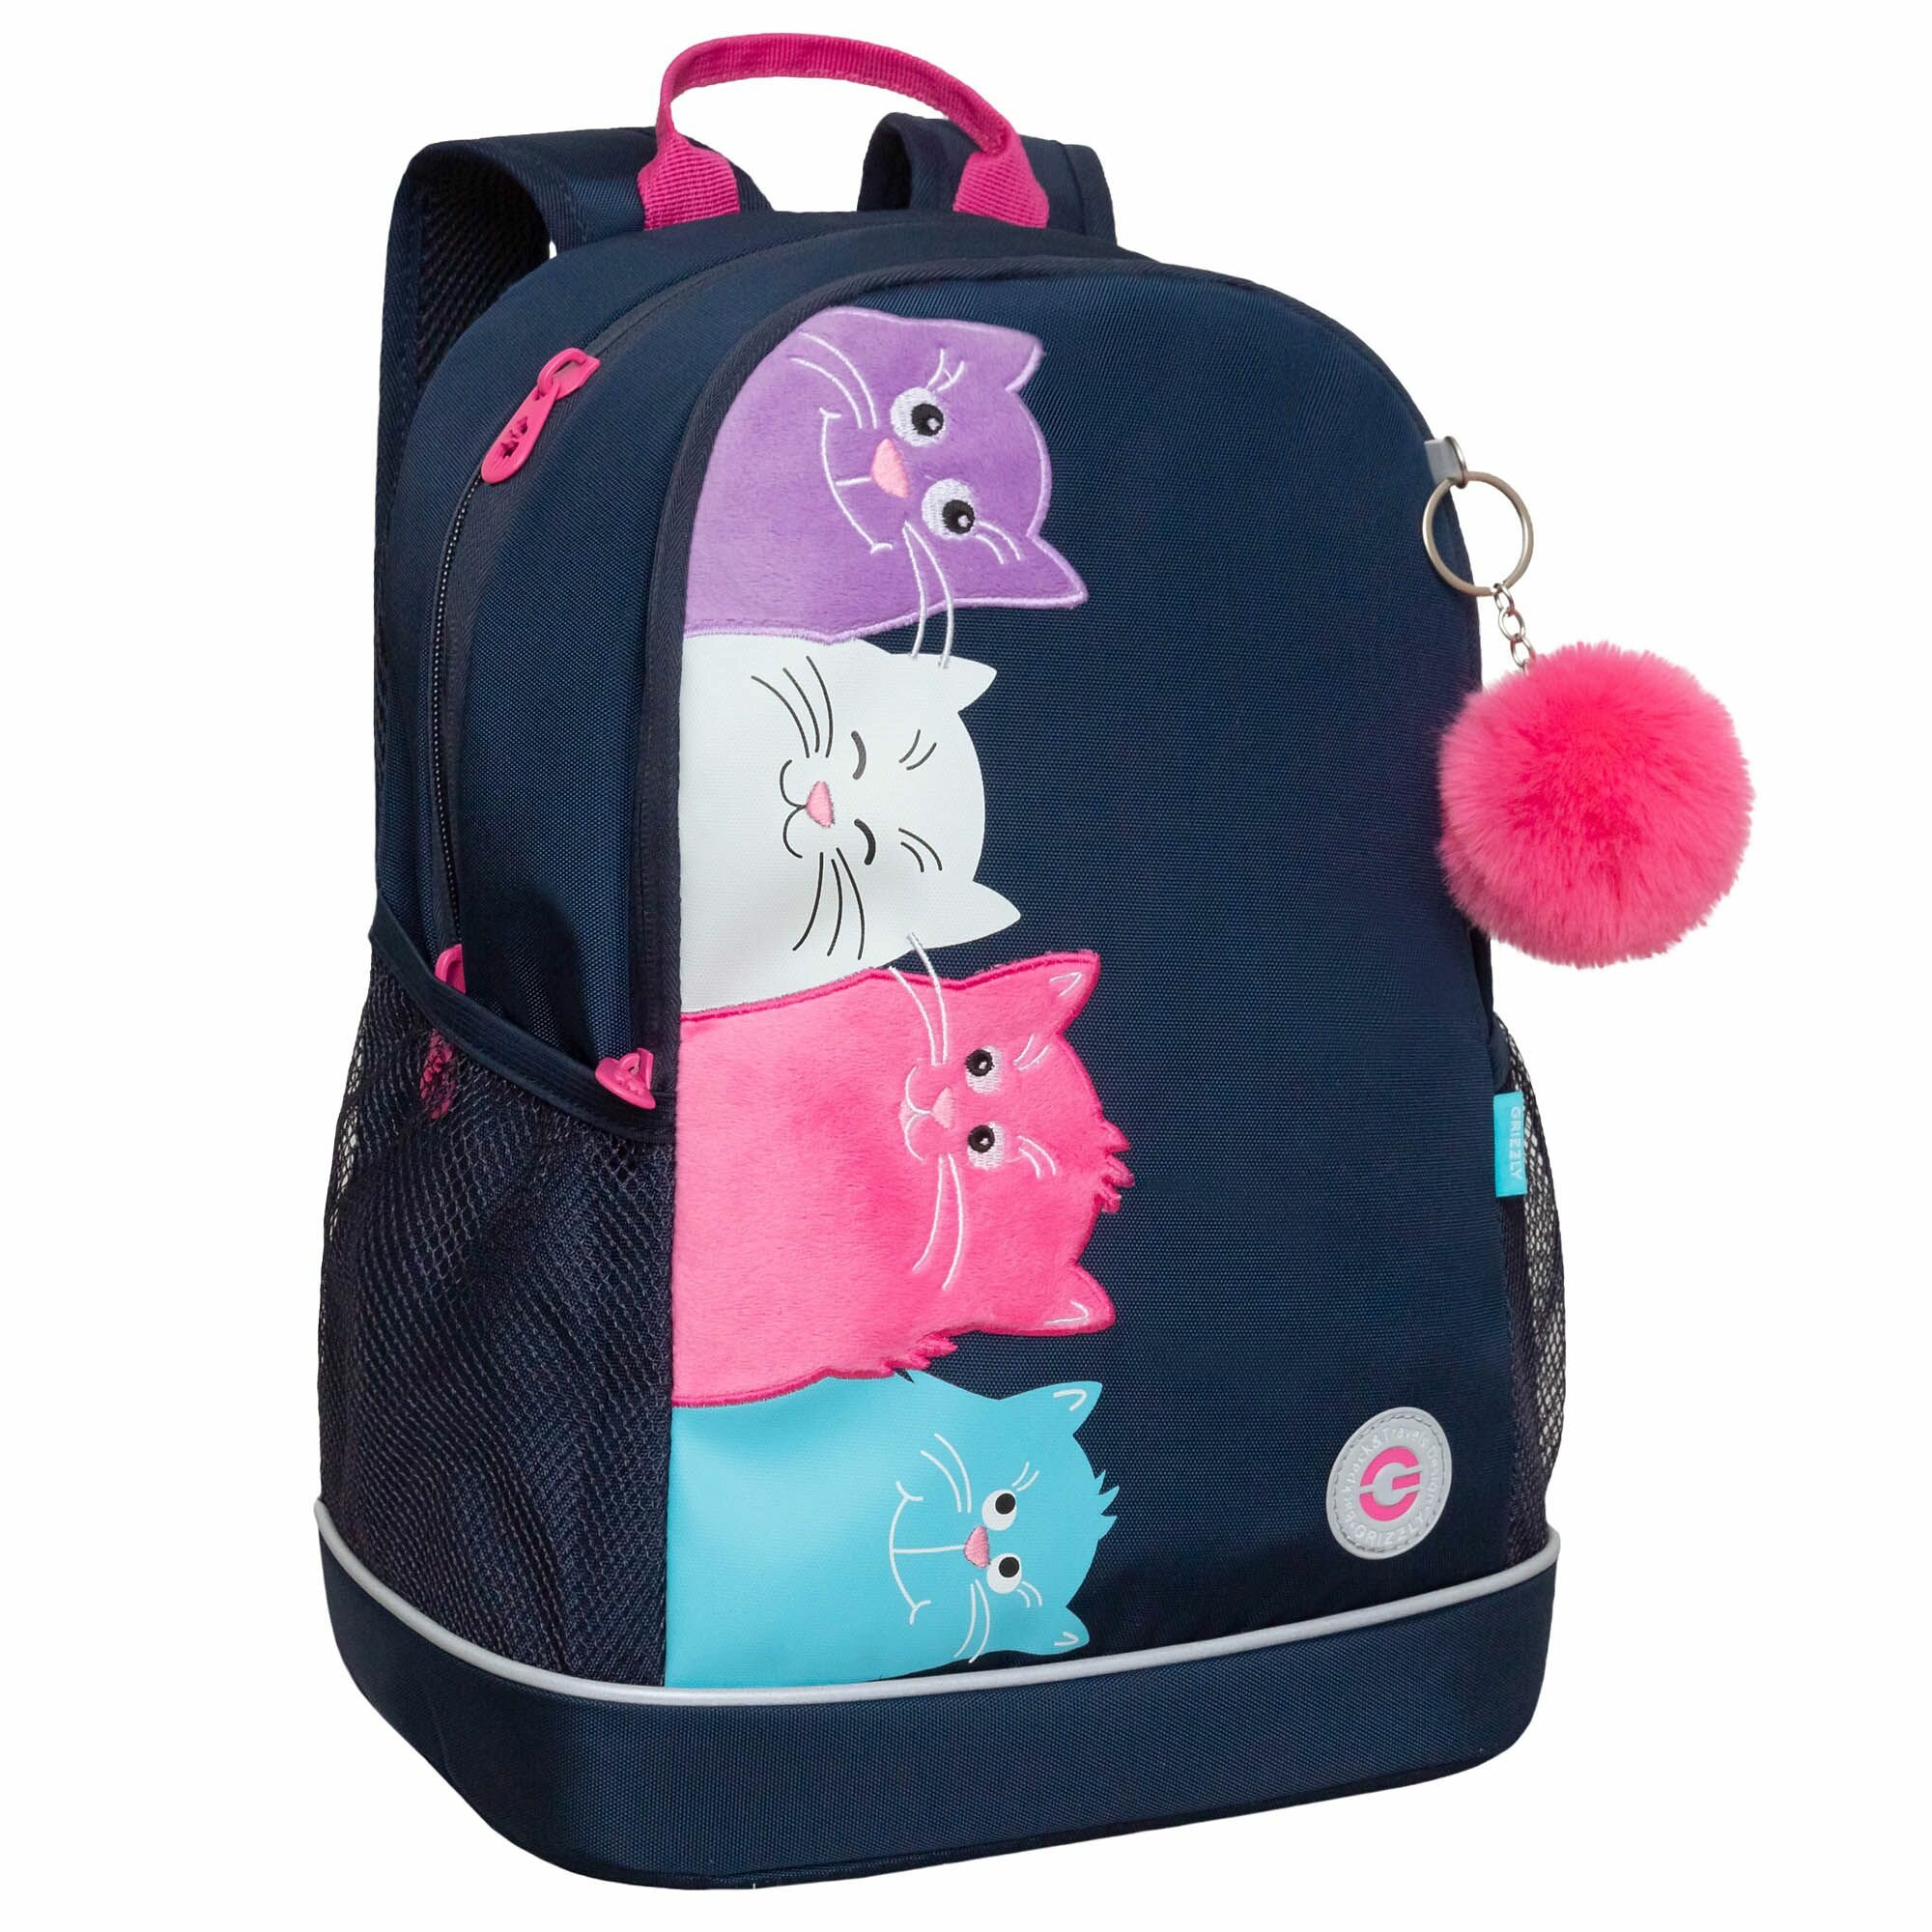 Рюкзак школьный для девочки подростка, с ортопедической спинкой, для средней школы, GRIZZLY (синий)